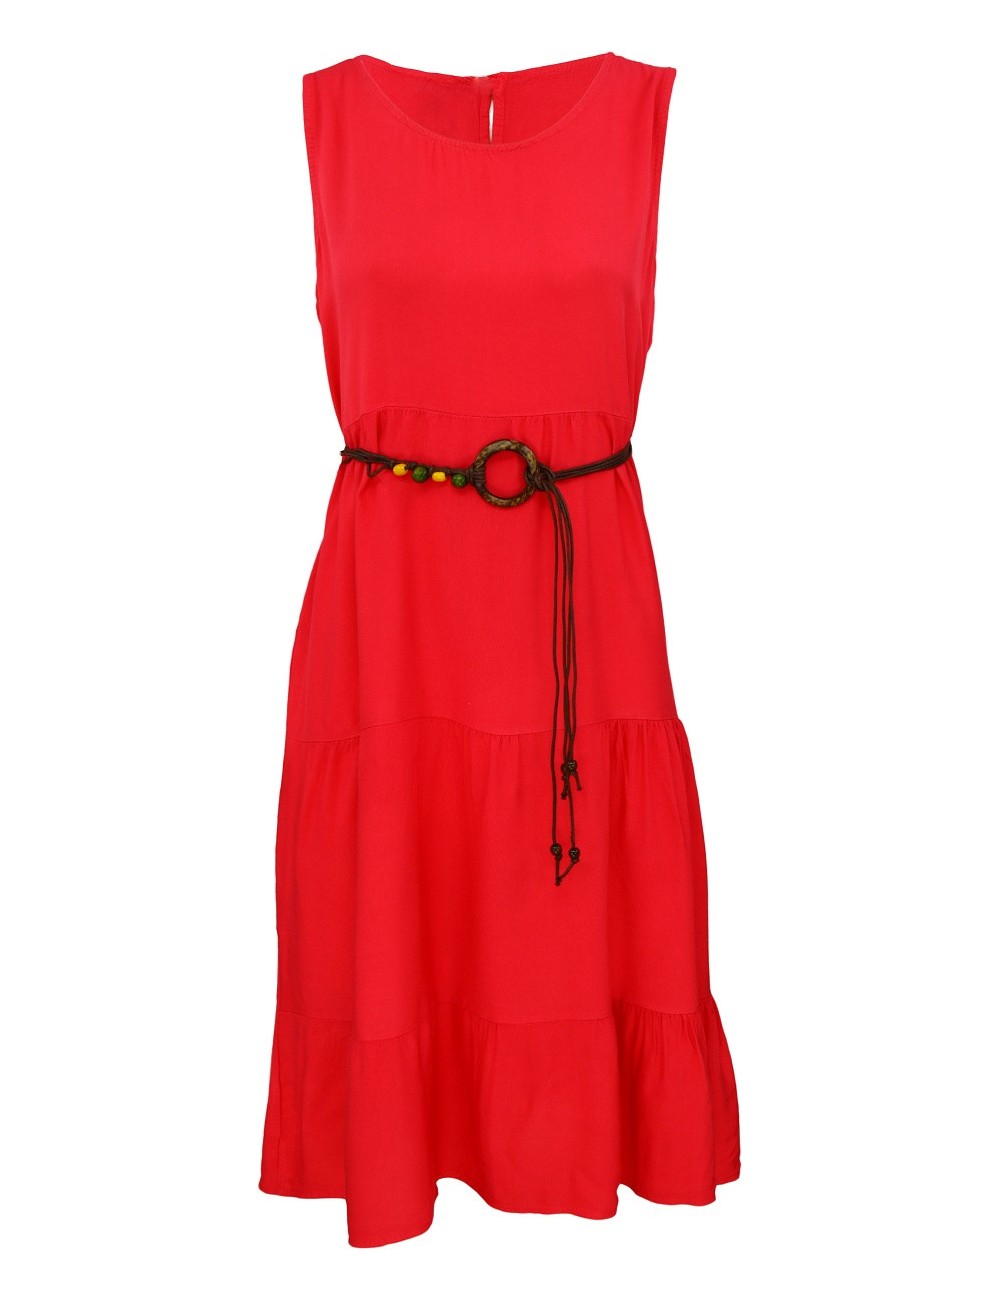 Dámské jednobarevné letní šaty - červené - vel. UNI